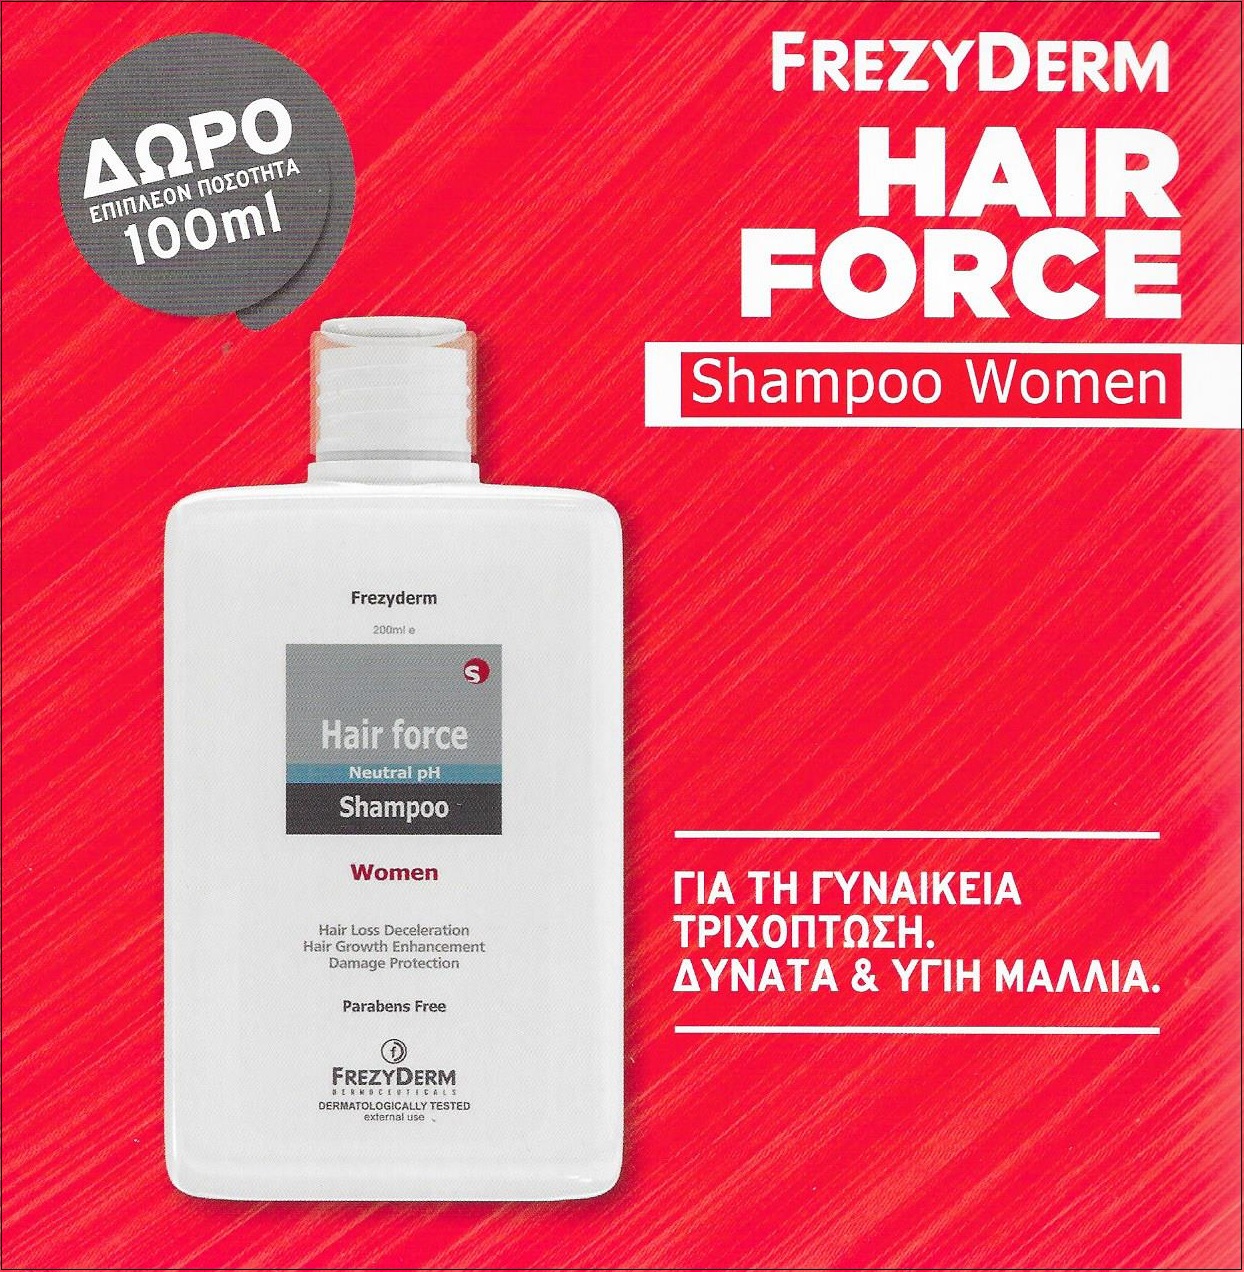 FREZYDERM Hair Force Shampoo Women 200ml + ΔΩΡΟ Επιπλέον Ποσότητα 100ml